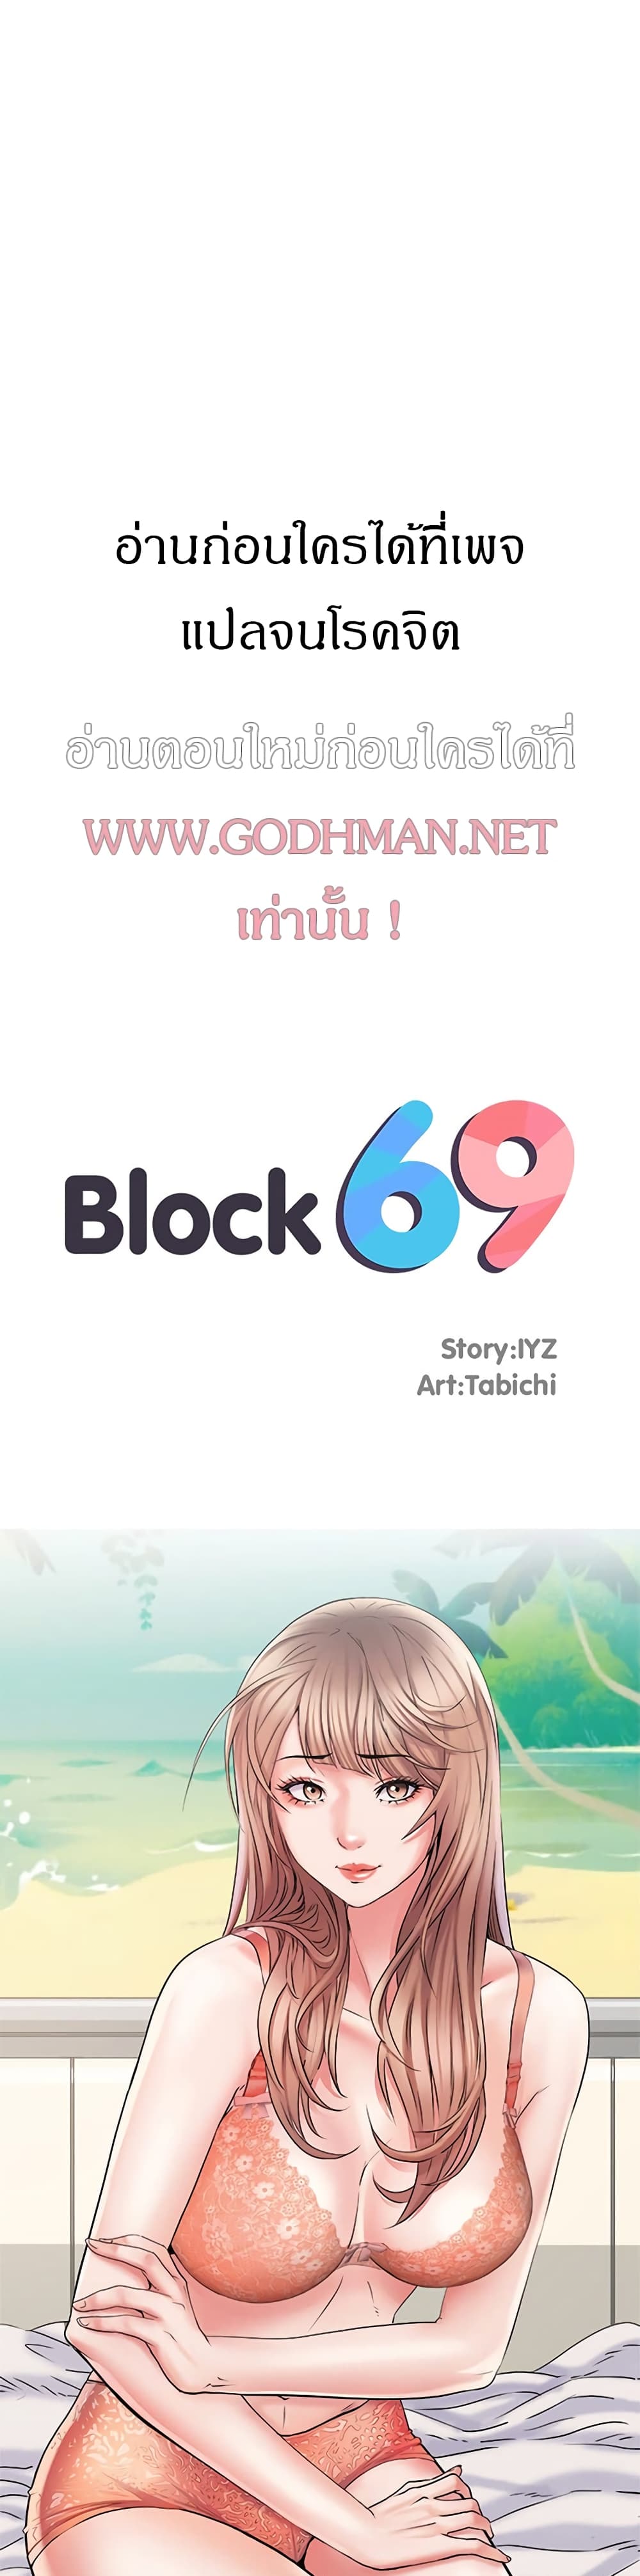 Block 69 ตอนที่ 2 ภาพ 2